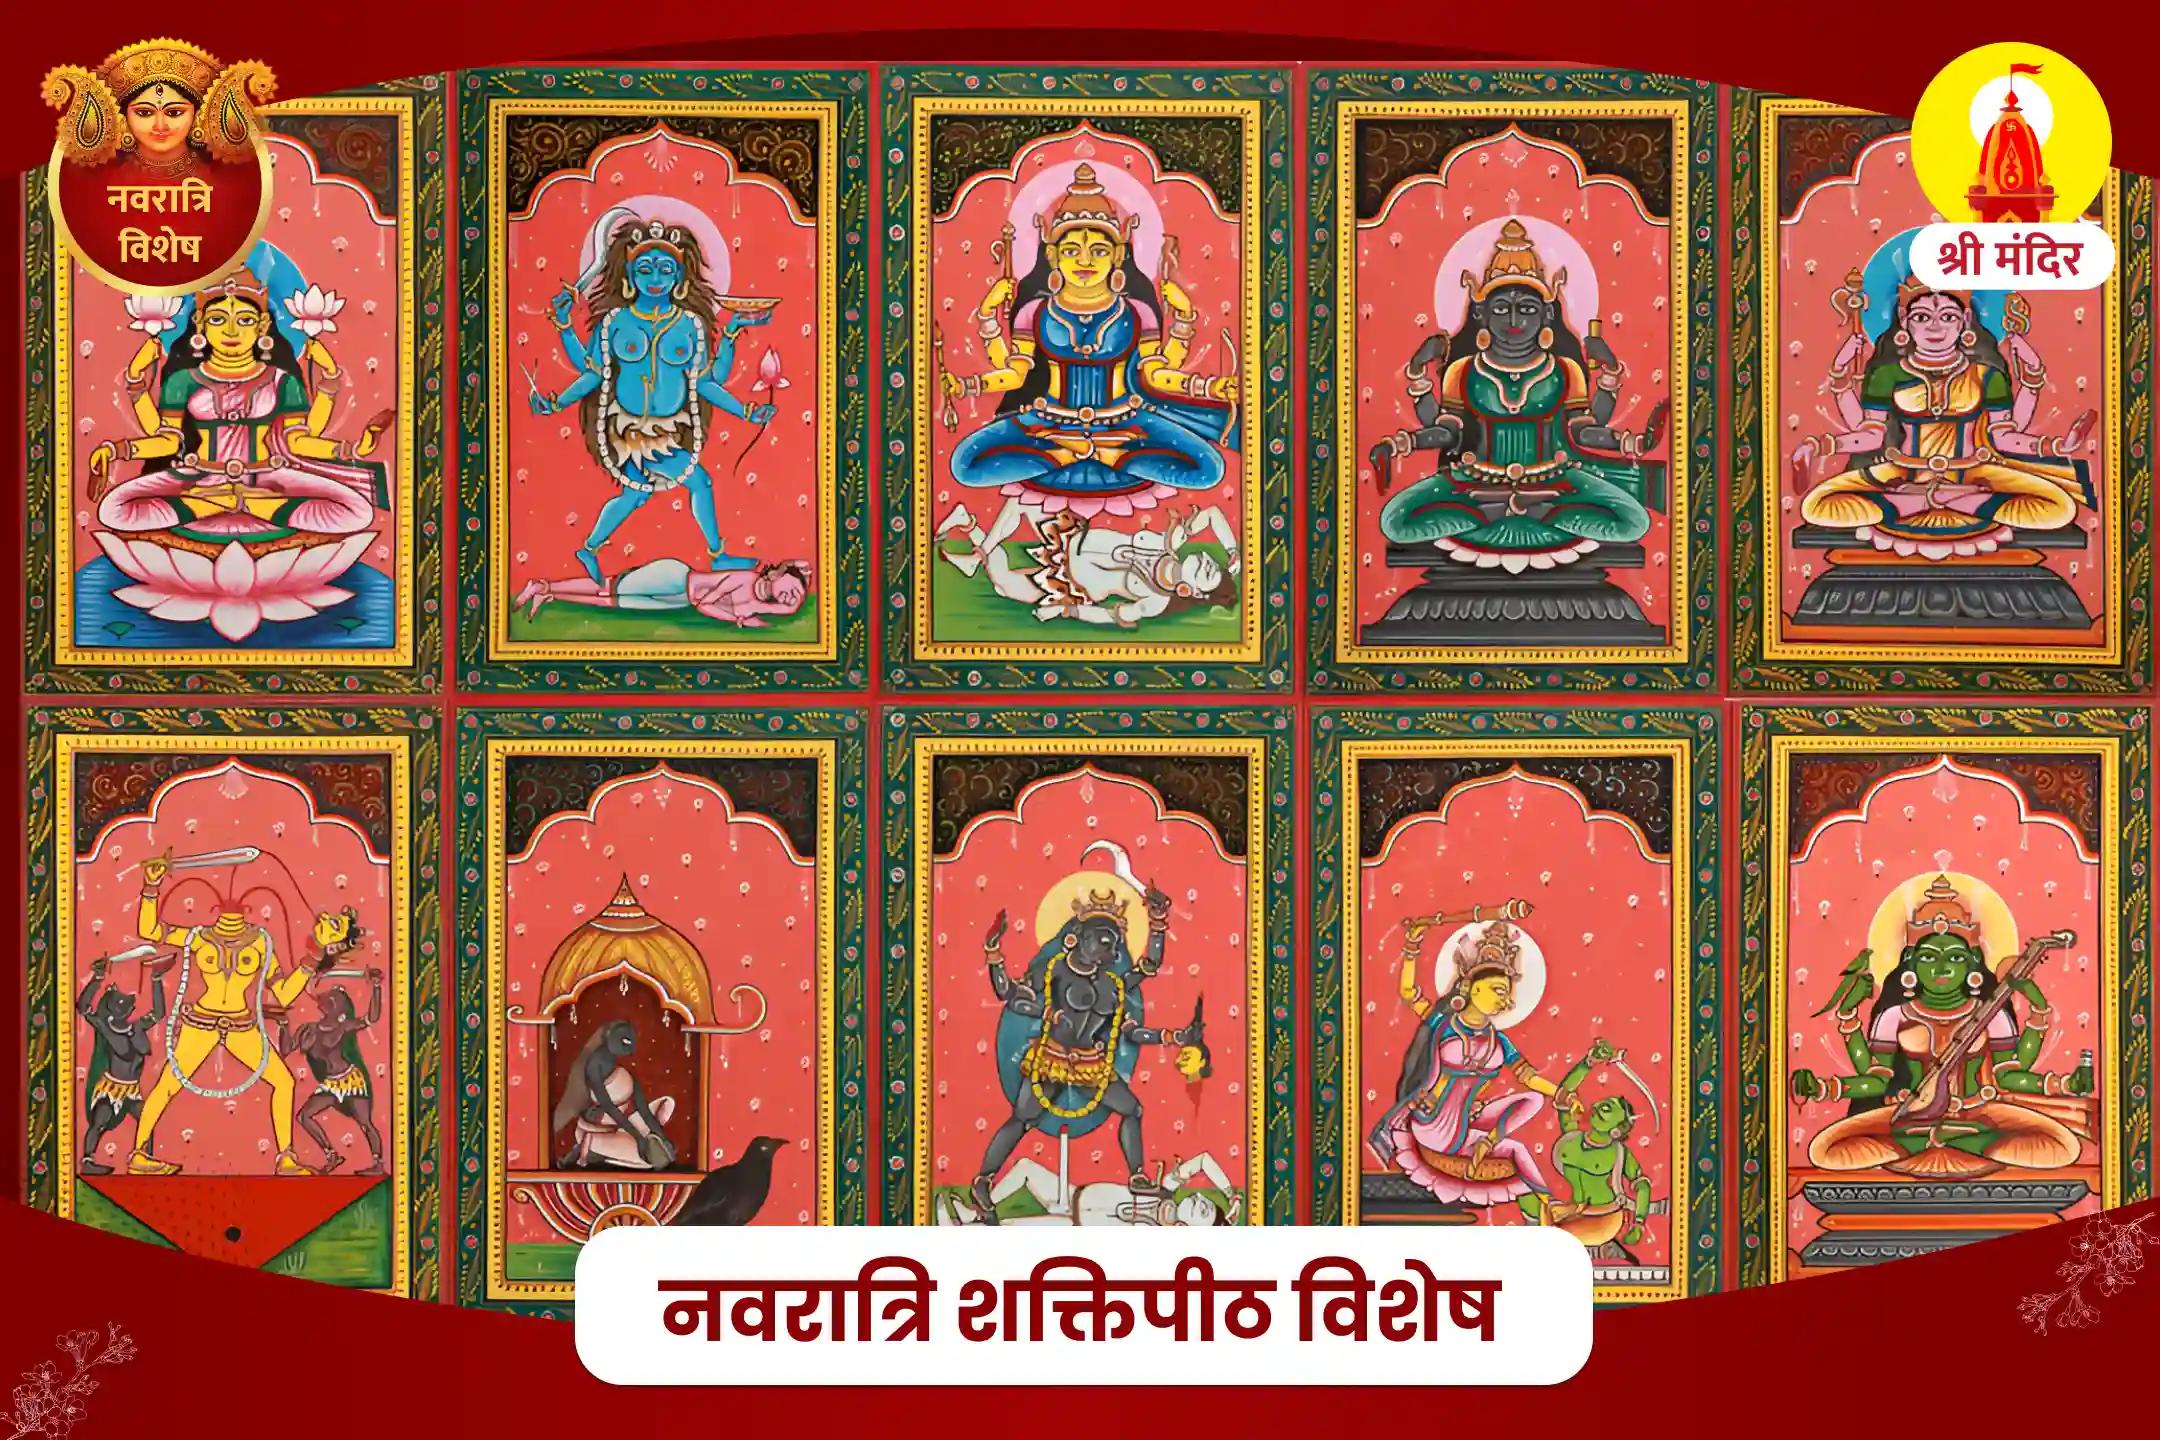 नवरात्रि शक्तिपीठ विशेष सर्व सिद्धि एवं सर्व शक्ति प्रदायक दस महाविद्या पूजा और मां कामाख्या यज्ञ 